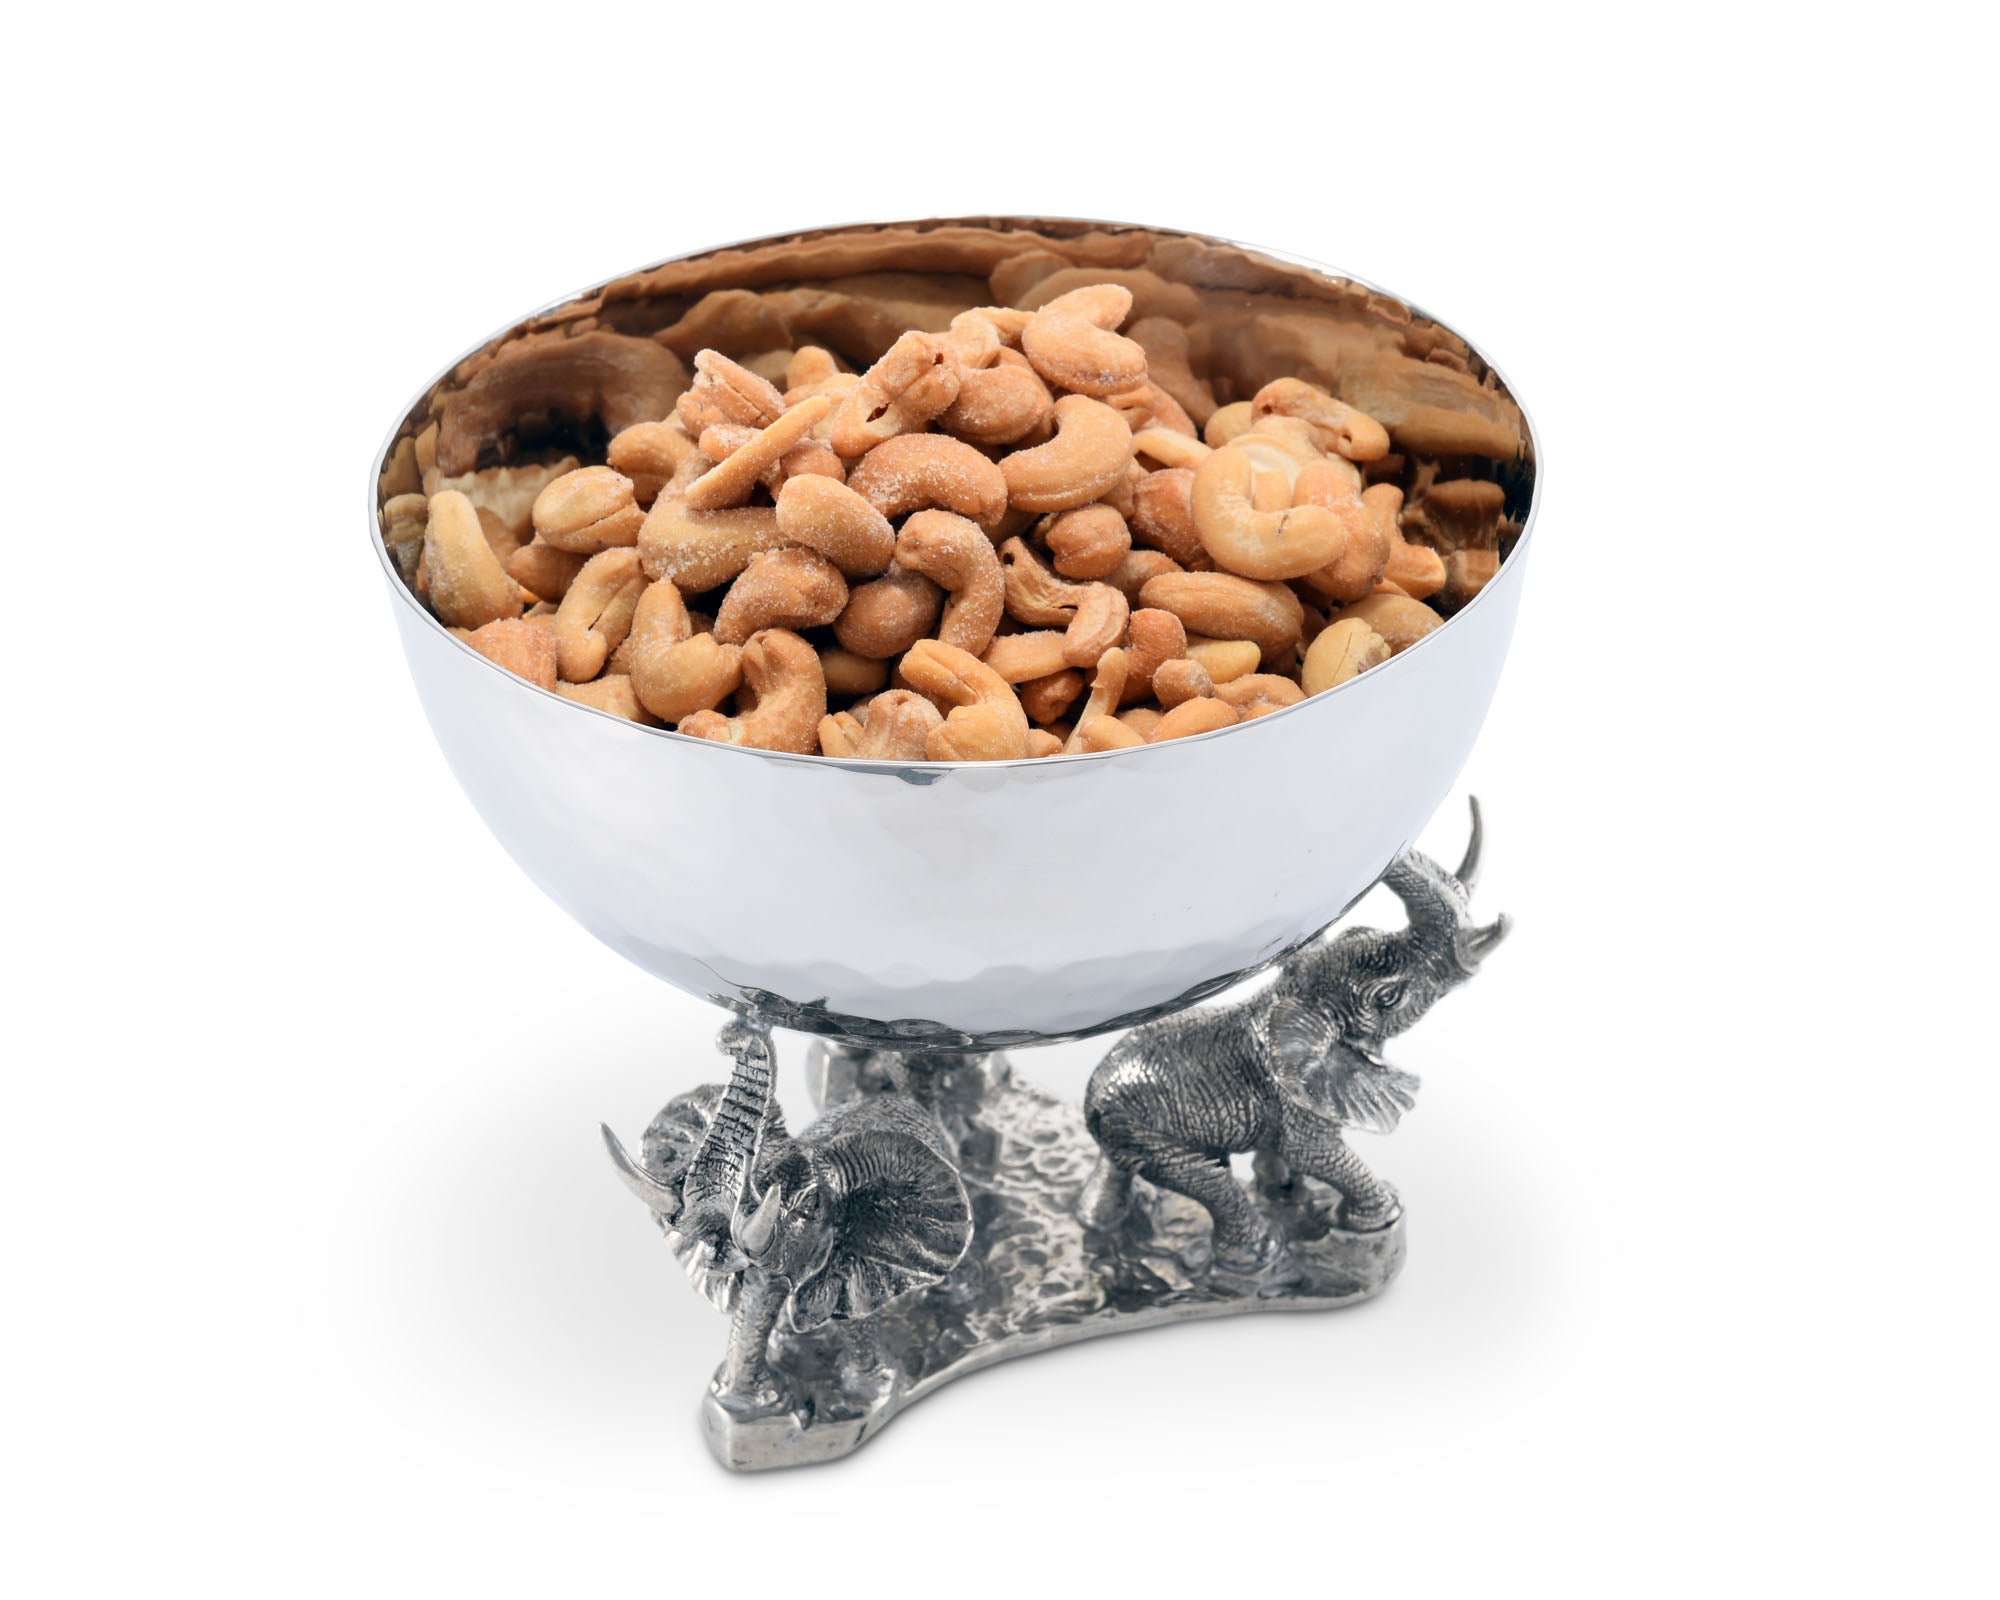 Vagabond House Stainless Nut Bowl - Pewter Elephant Base Product Image